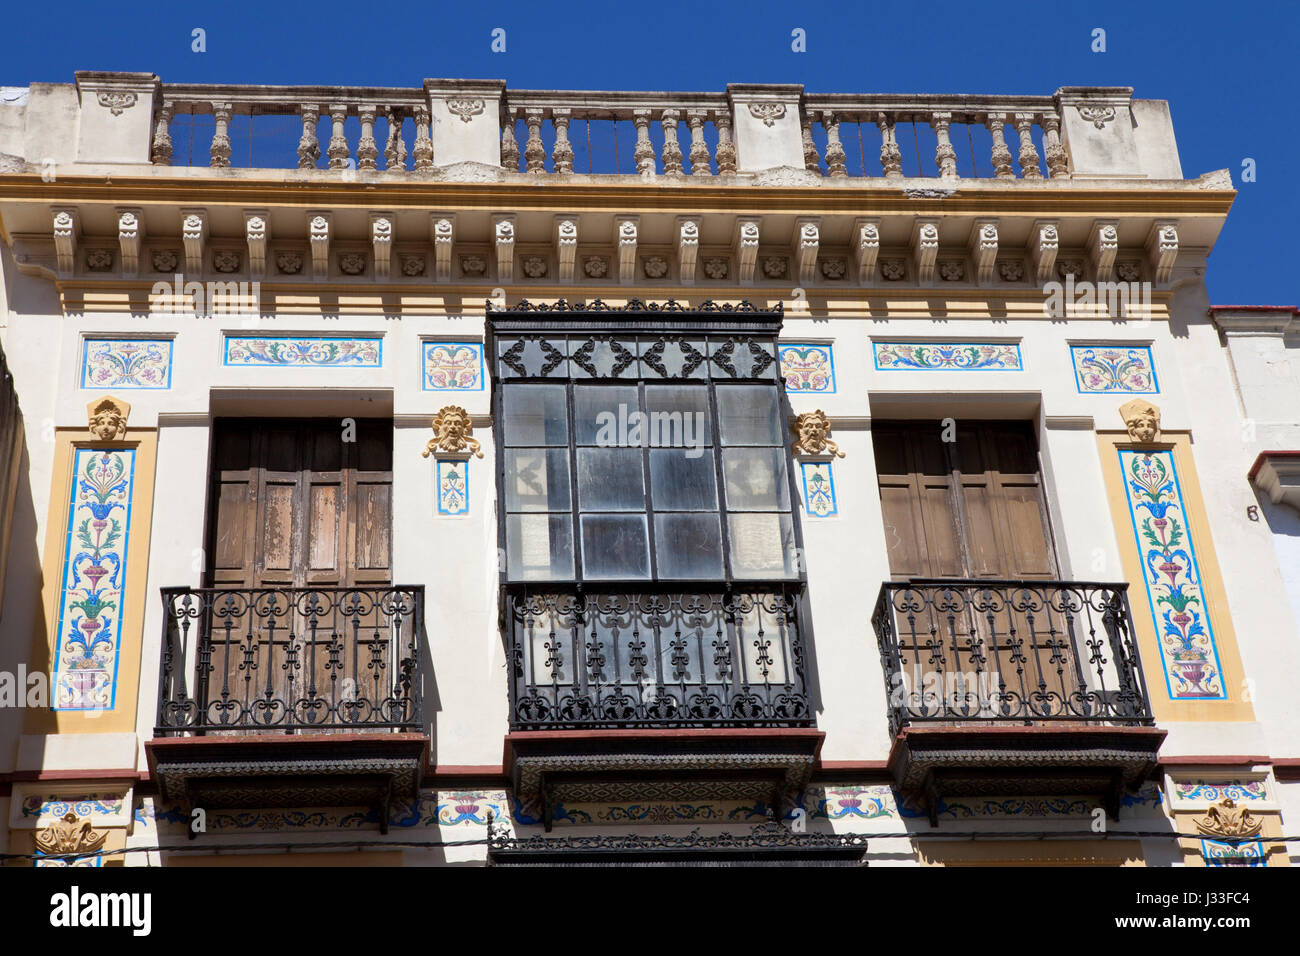 Las casas históricas de Jerez de la Frontera, Cádiz, Costa de la Luz, Andalucía, España, Europa Foto de stock